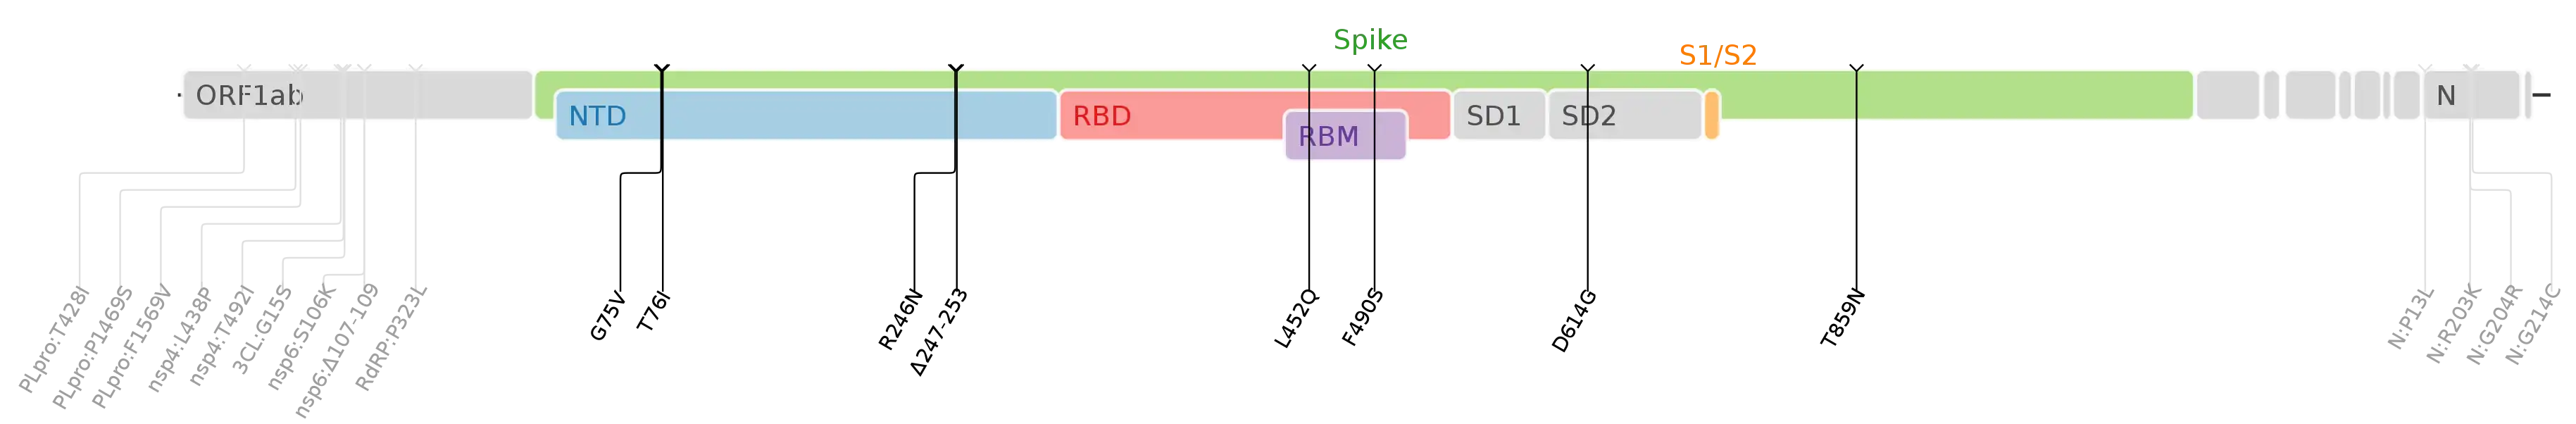 Mutations d'acides aminés de la variante SARS-CoV-2 Lambda tracées sur une carte du génome du SARS-CoV-2 en mettant l'accent sur le pic.